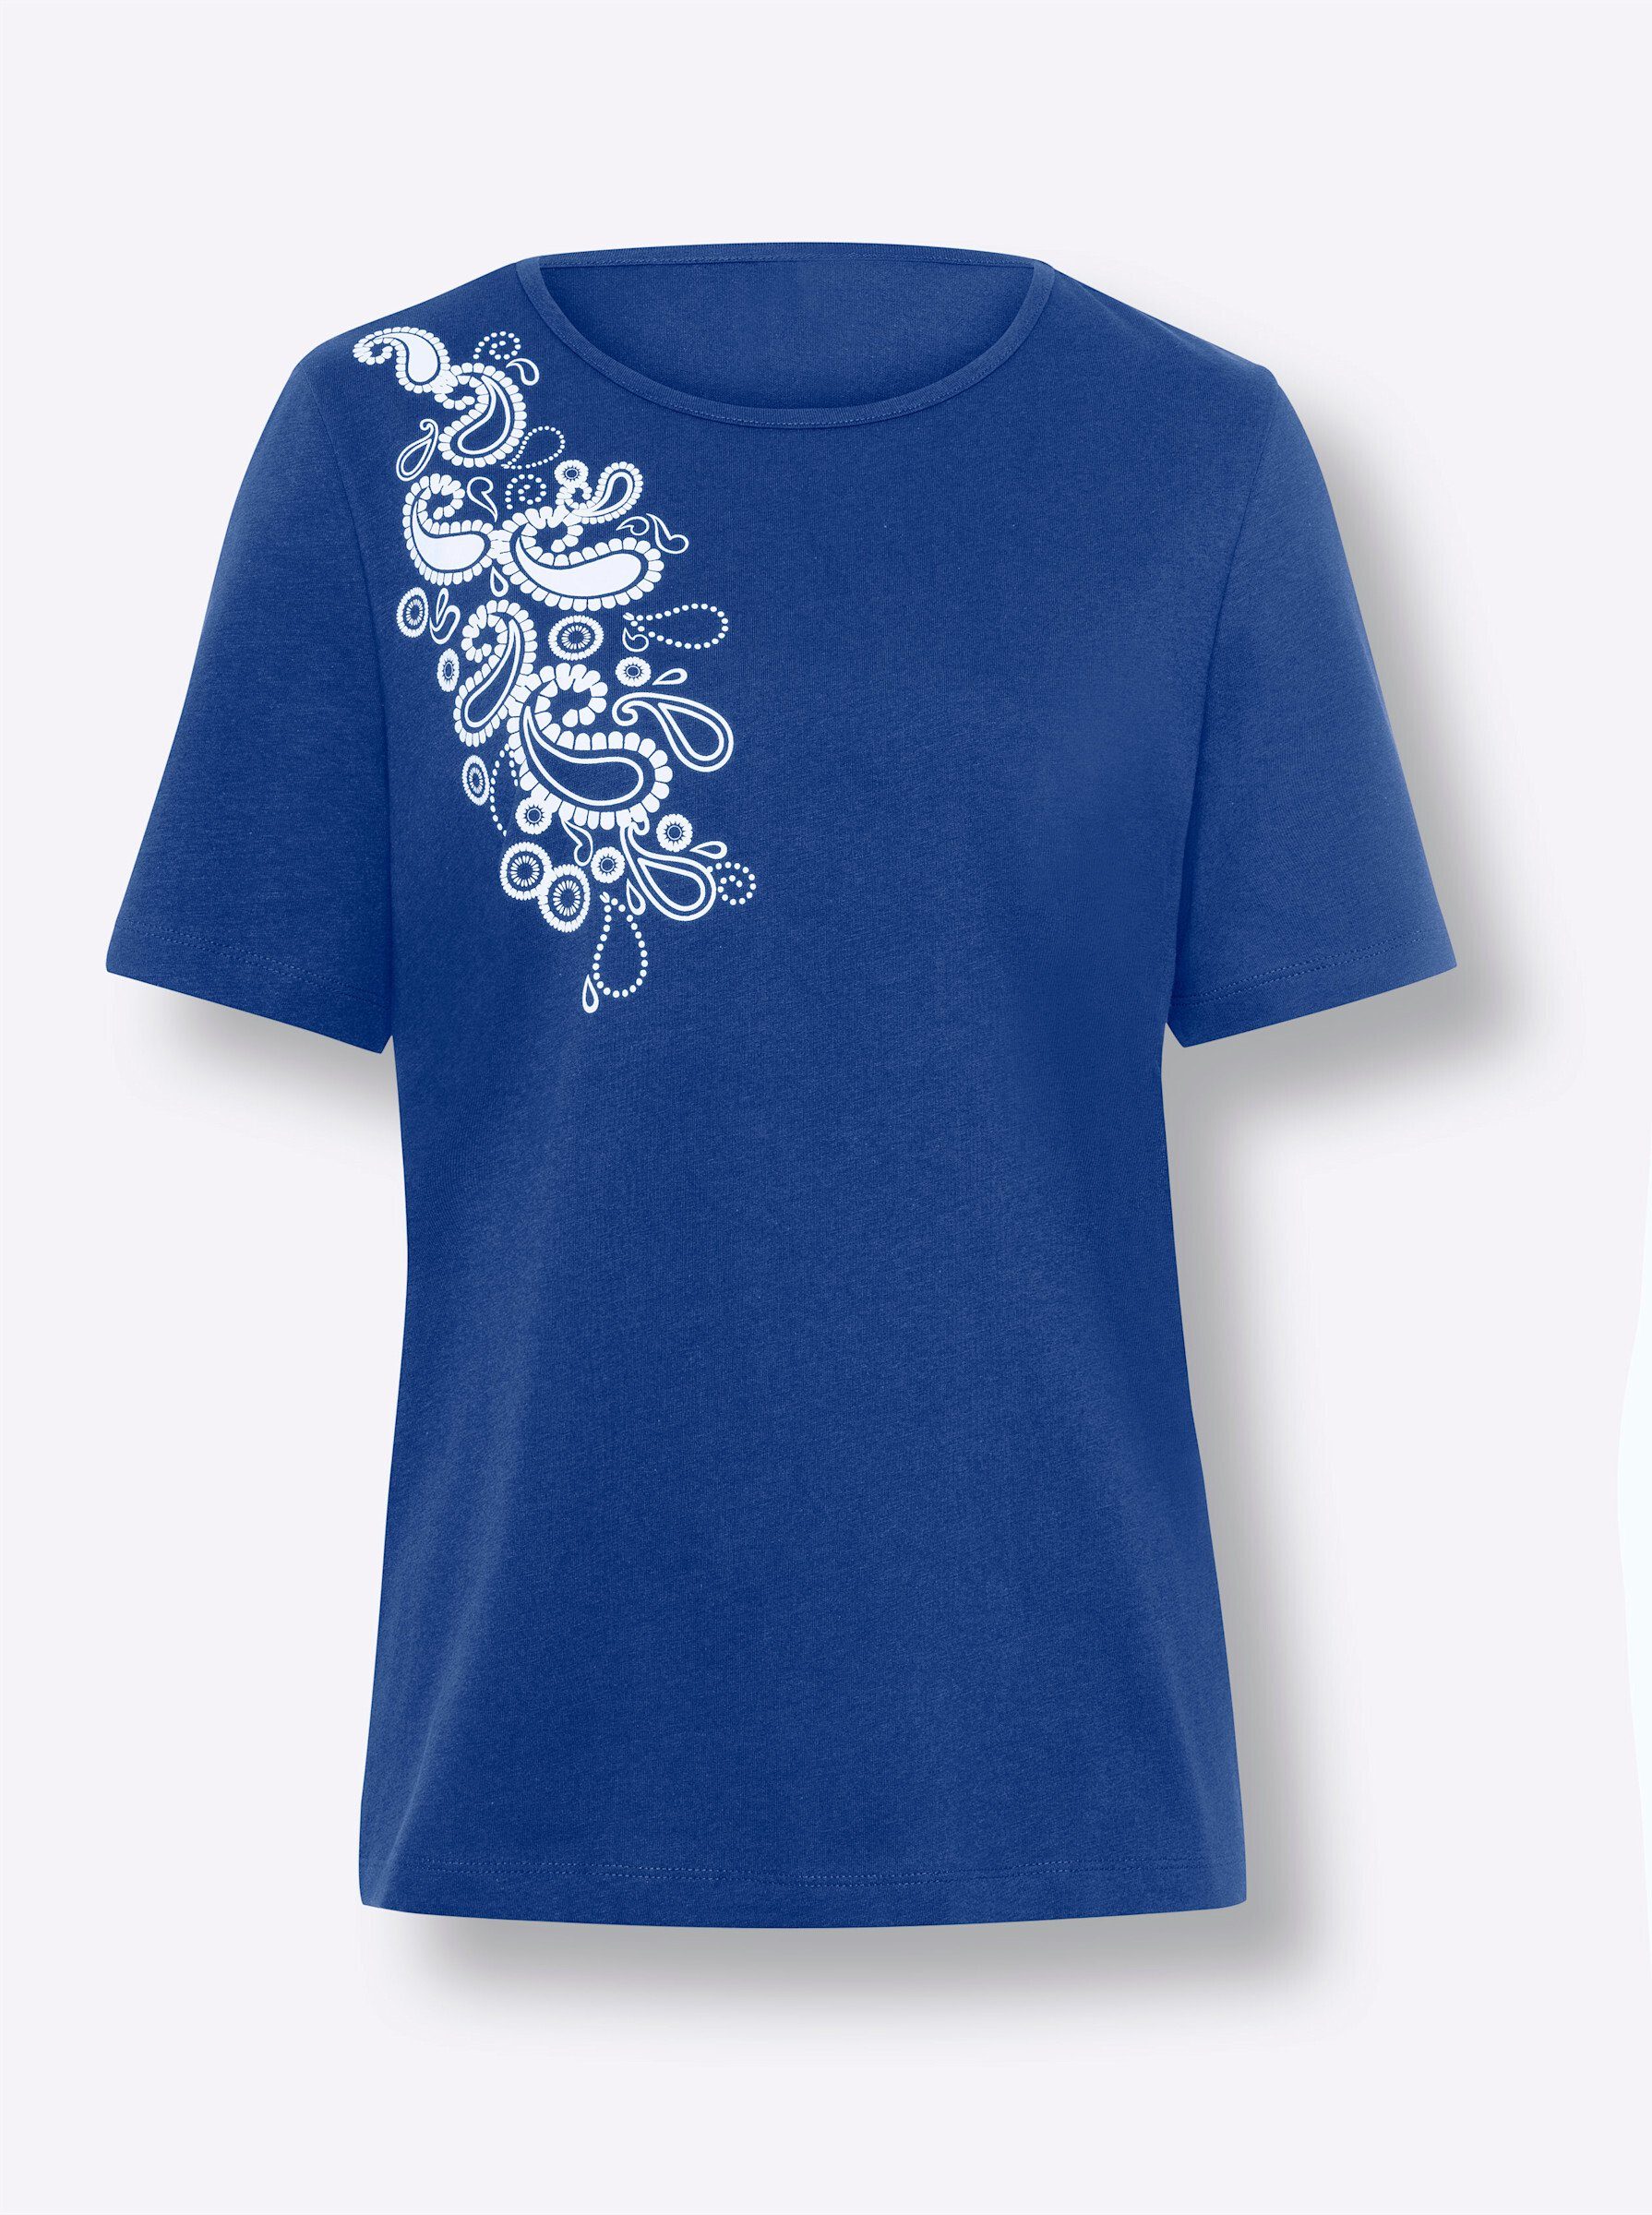 T-Shirt an! Sieh royalblau-weiß